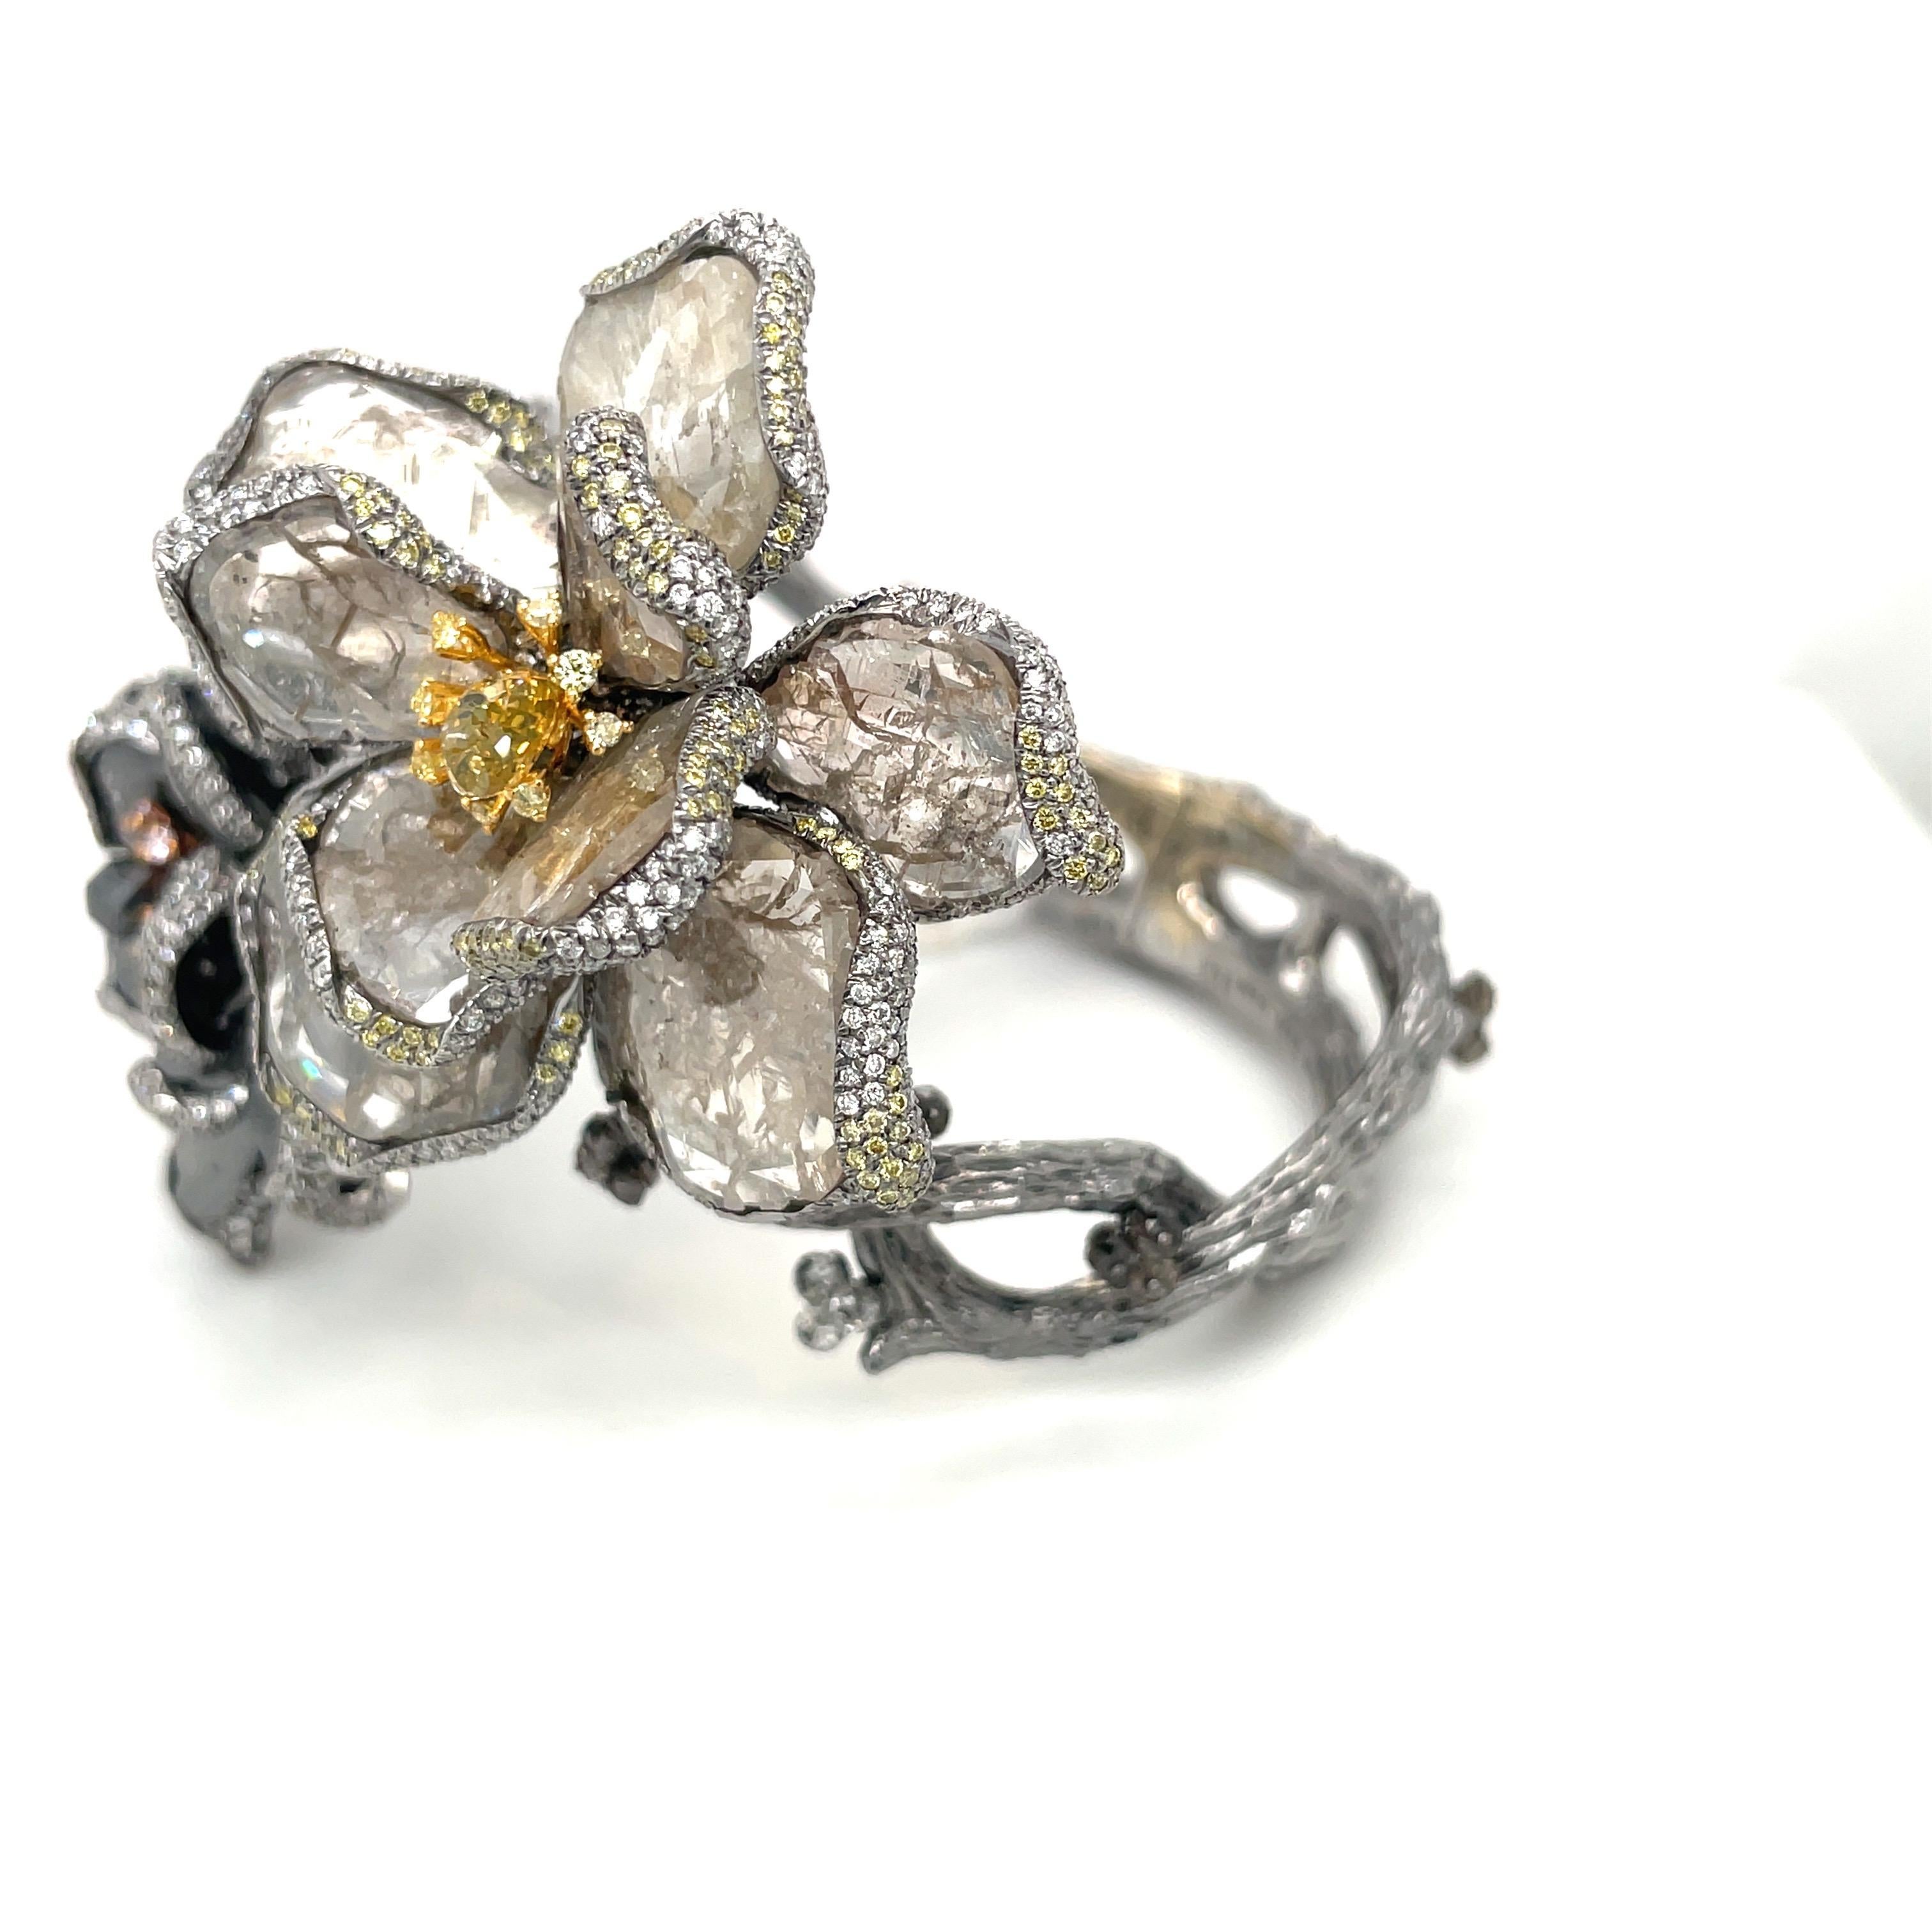 Ein wahres Kunstwerk!!
Dieses wunderschöne Armband ist aus 18 Karat geschwärztem Gold gefertigt. Die Zwillingsblüten sind mit braunen und schwarzen Diamantscheiben als Blütenblätter besetzt. Jedes Blütenblatt ist anmutig mit eingefassten Diamanten